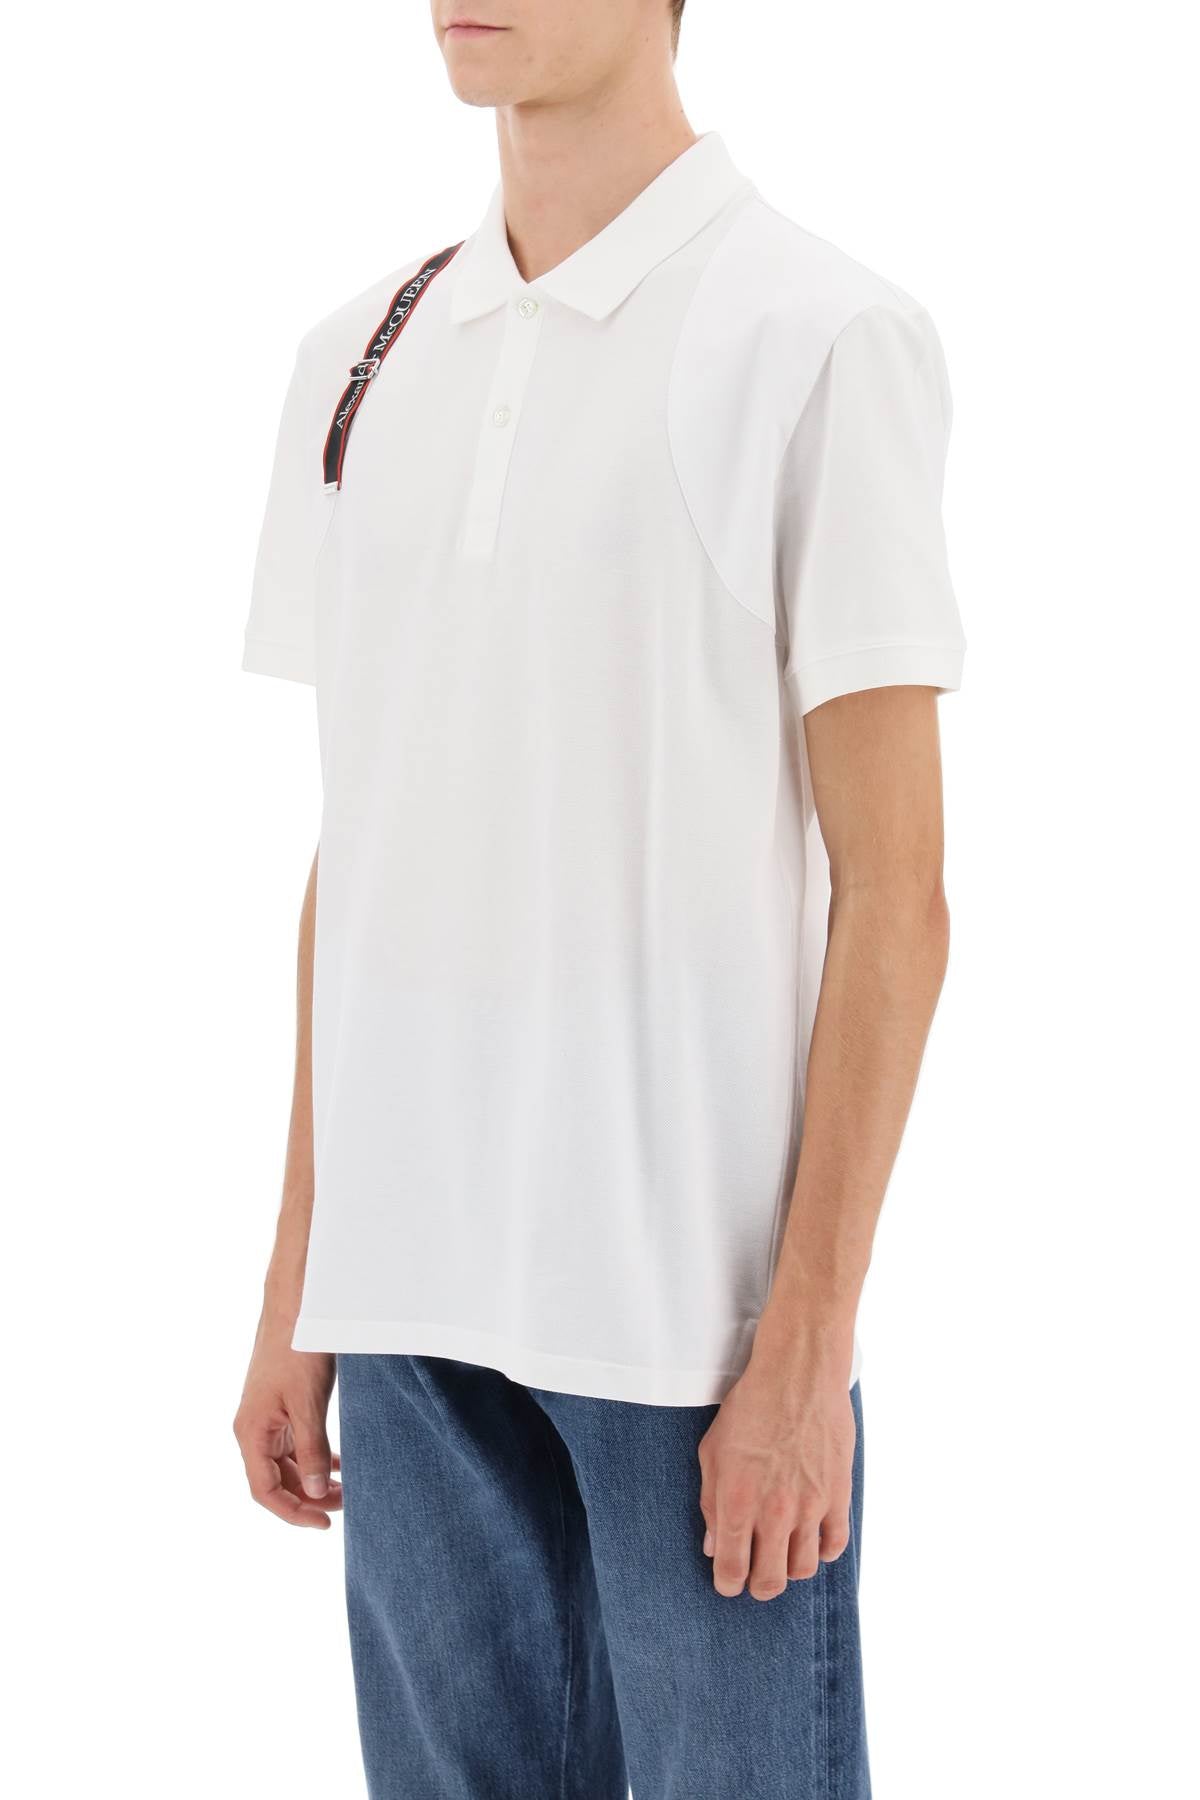 Alexander Mcqueen Harness Polo Shirt With Selvedge Logo Men